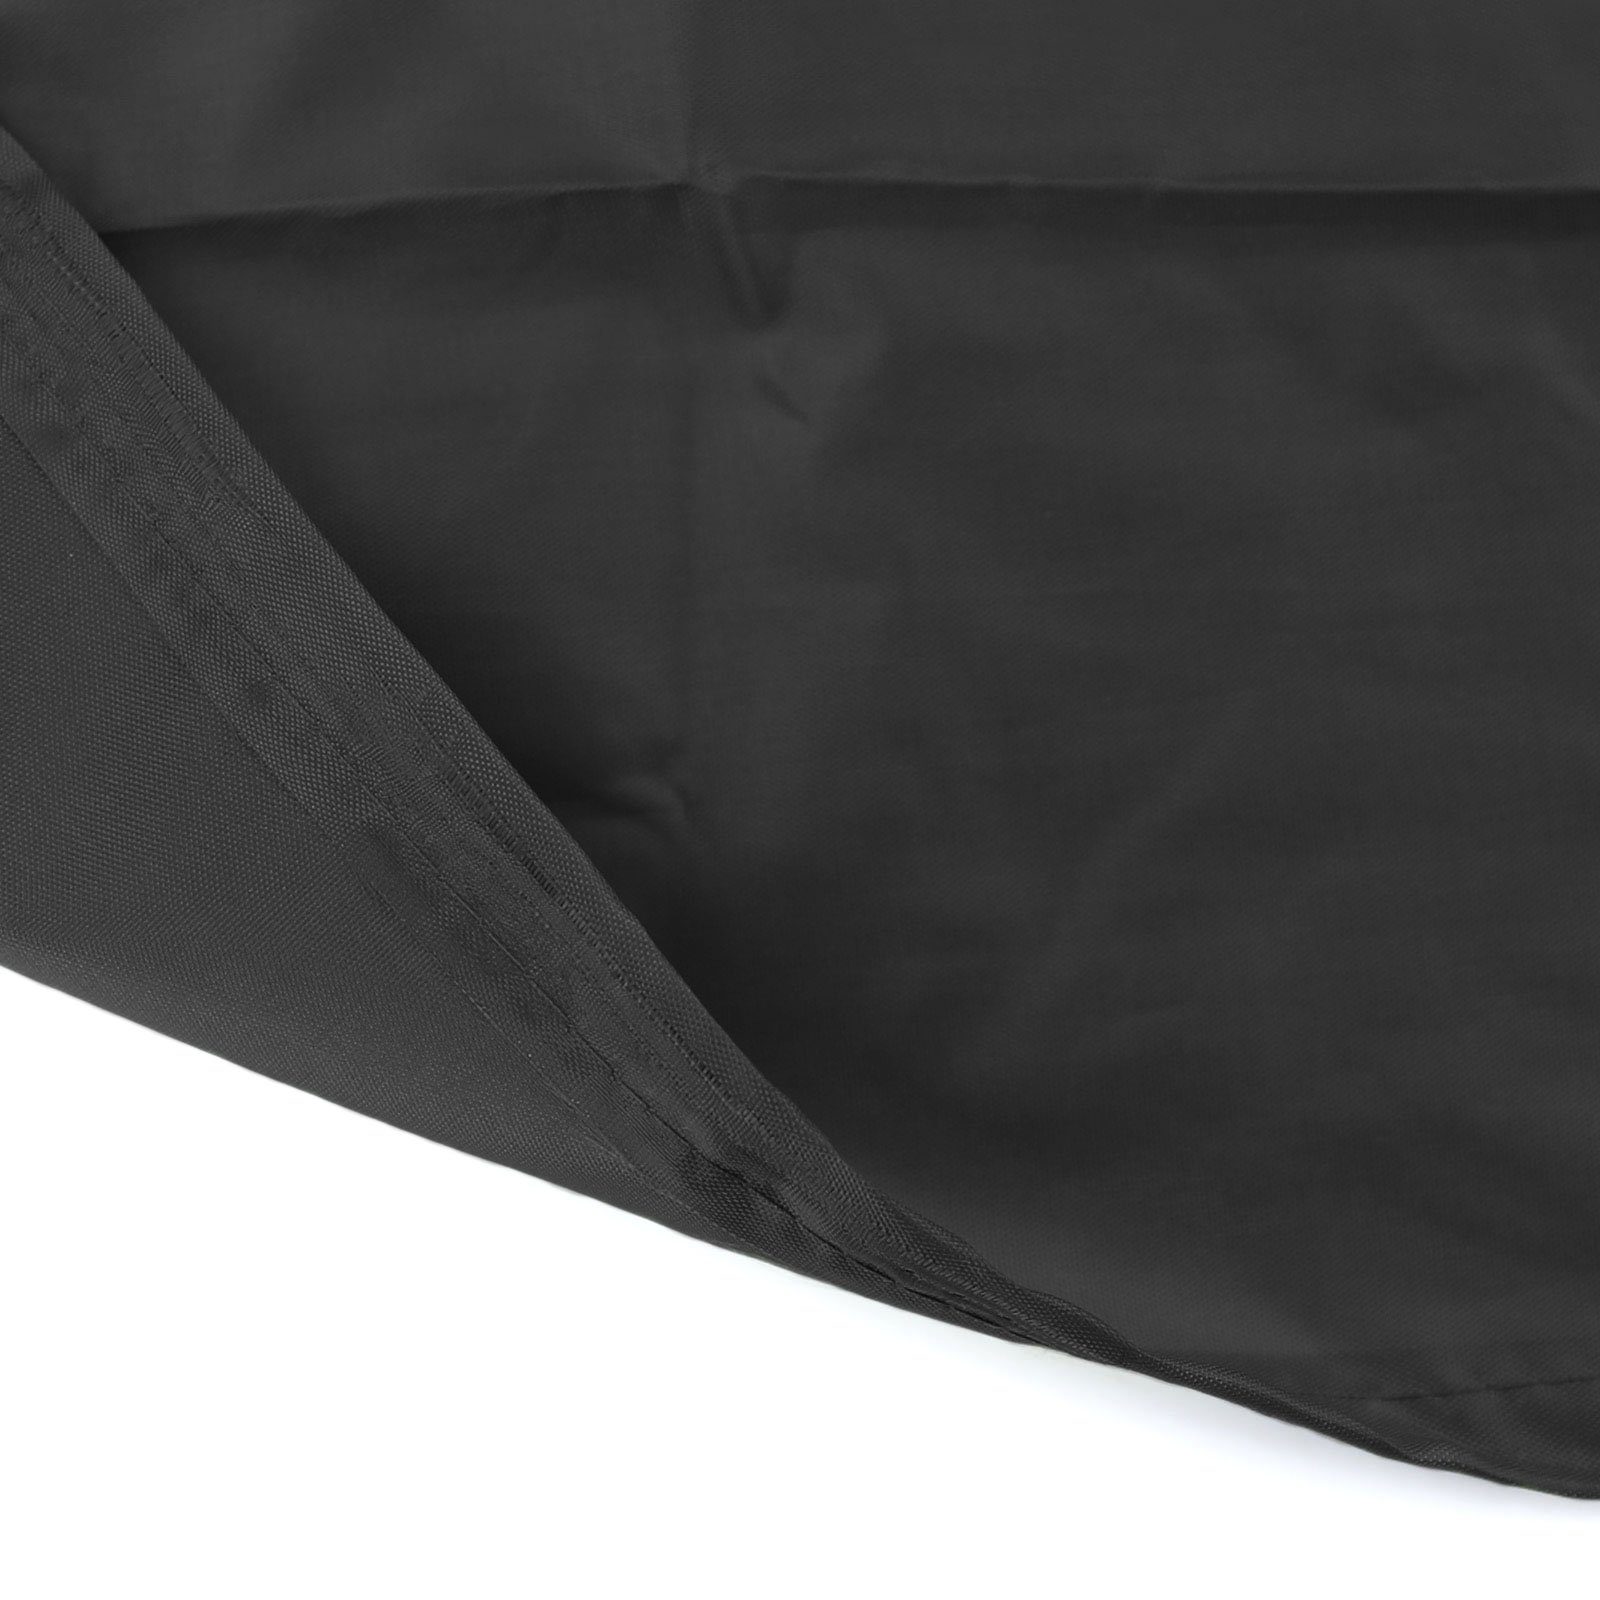 RAMROXX Hängesessel Premium 190x100cm Schwarz Schutzabdeckung für Schutzhülle Cover Hängesessel